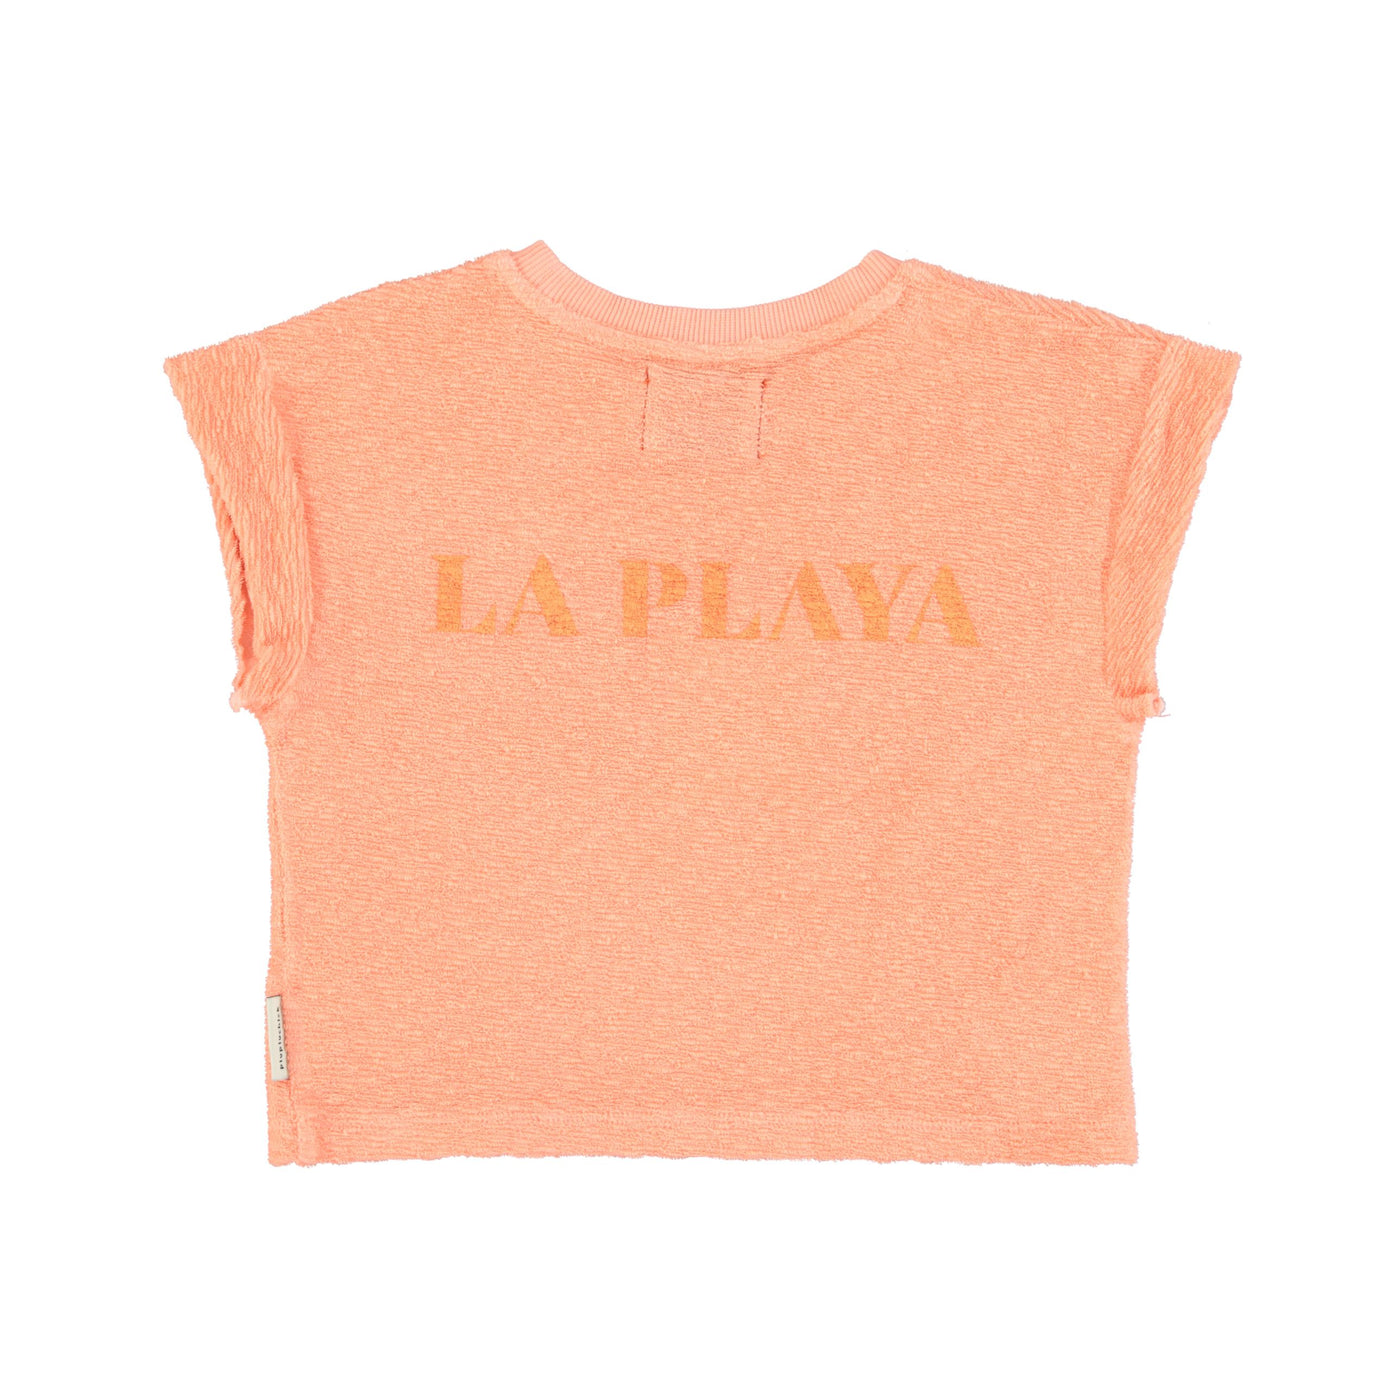 Piupiuchick t'shirt coral w/ "la playa" print